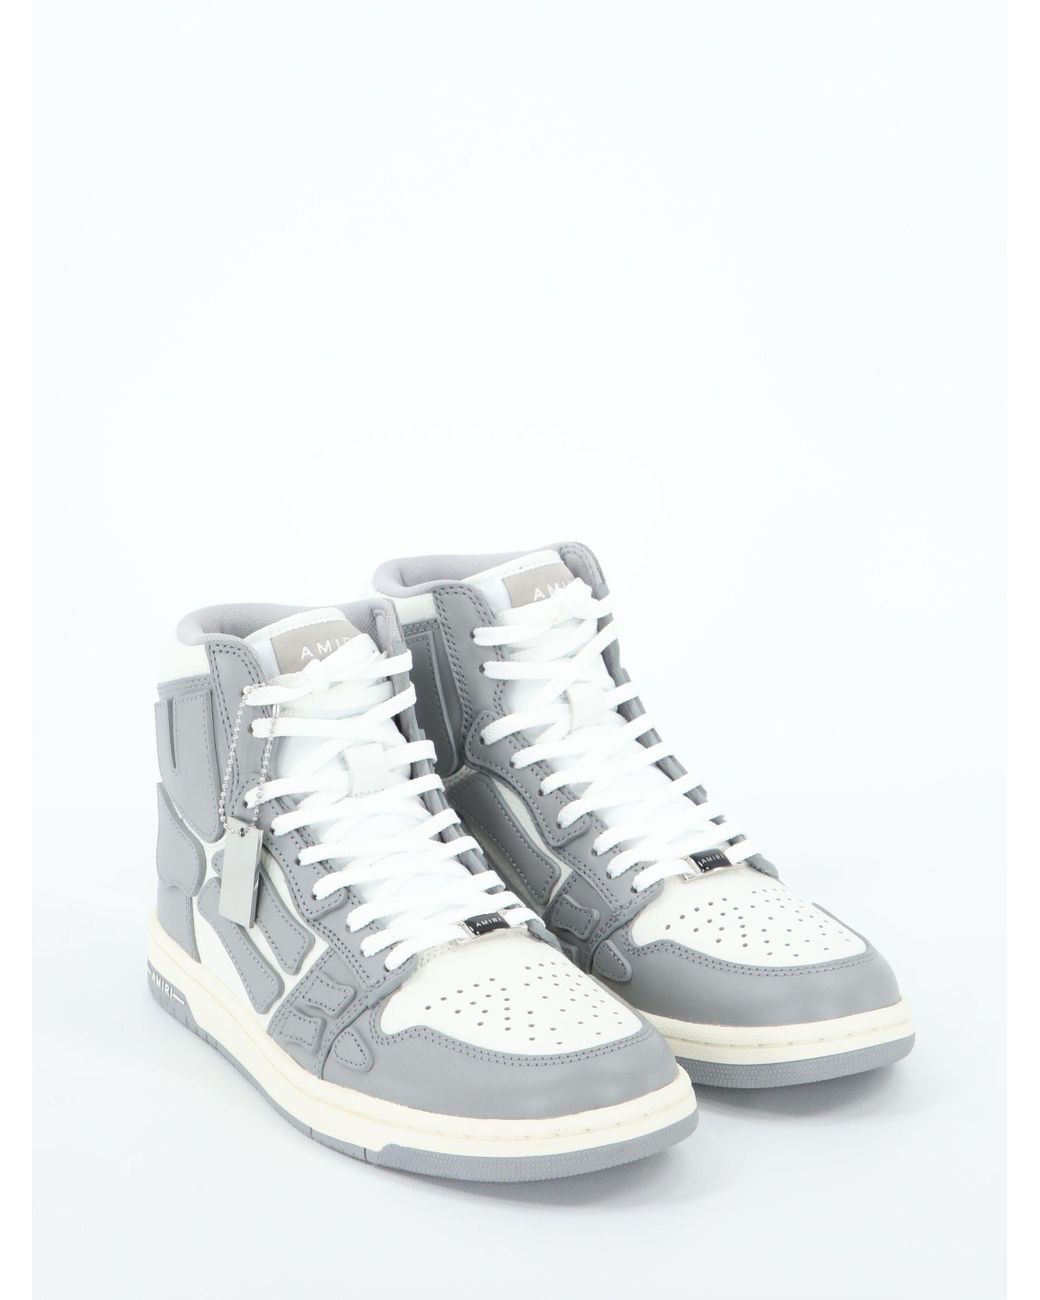 Amiri Leather Skel-top Hi Sneakers in White for Men - Lyst